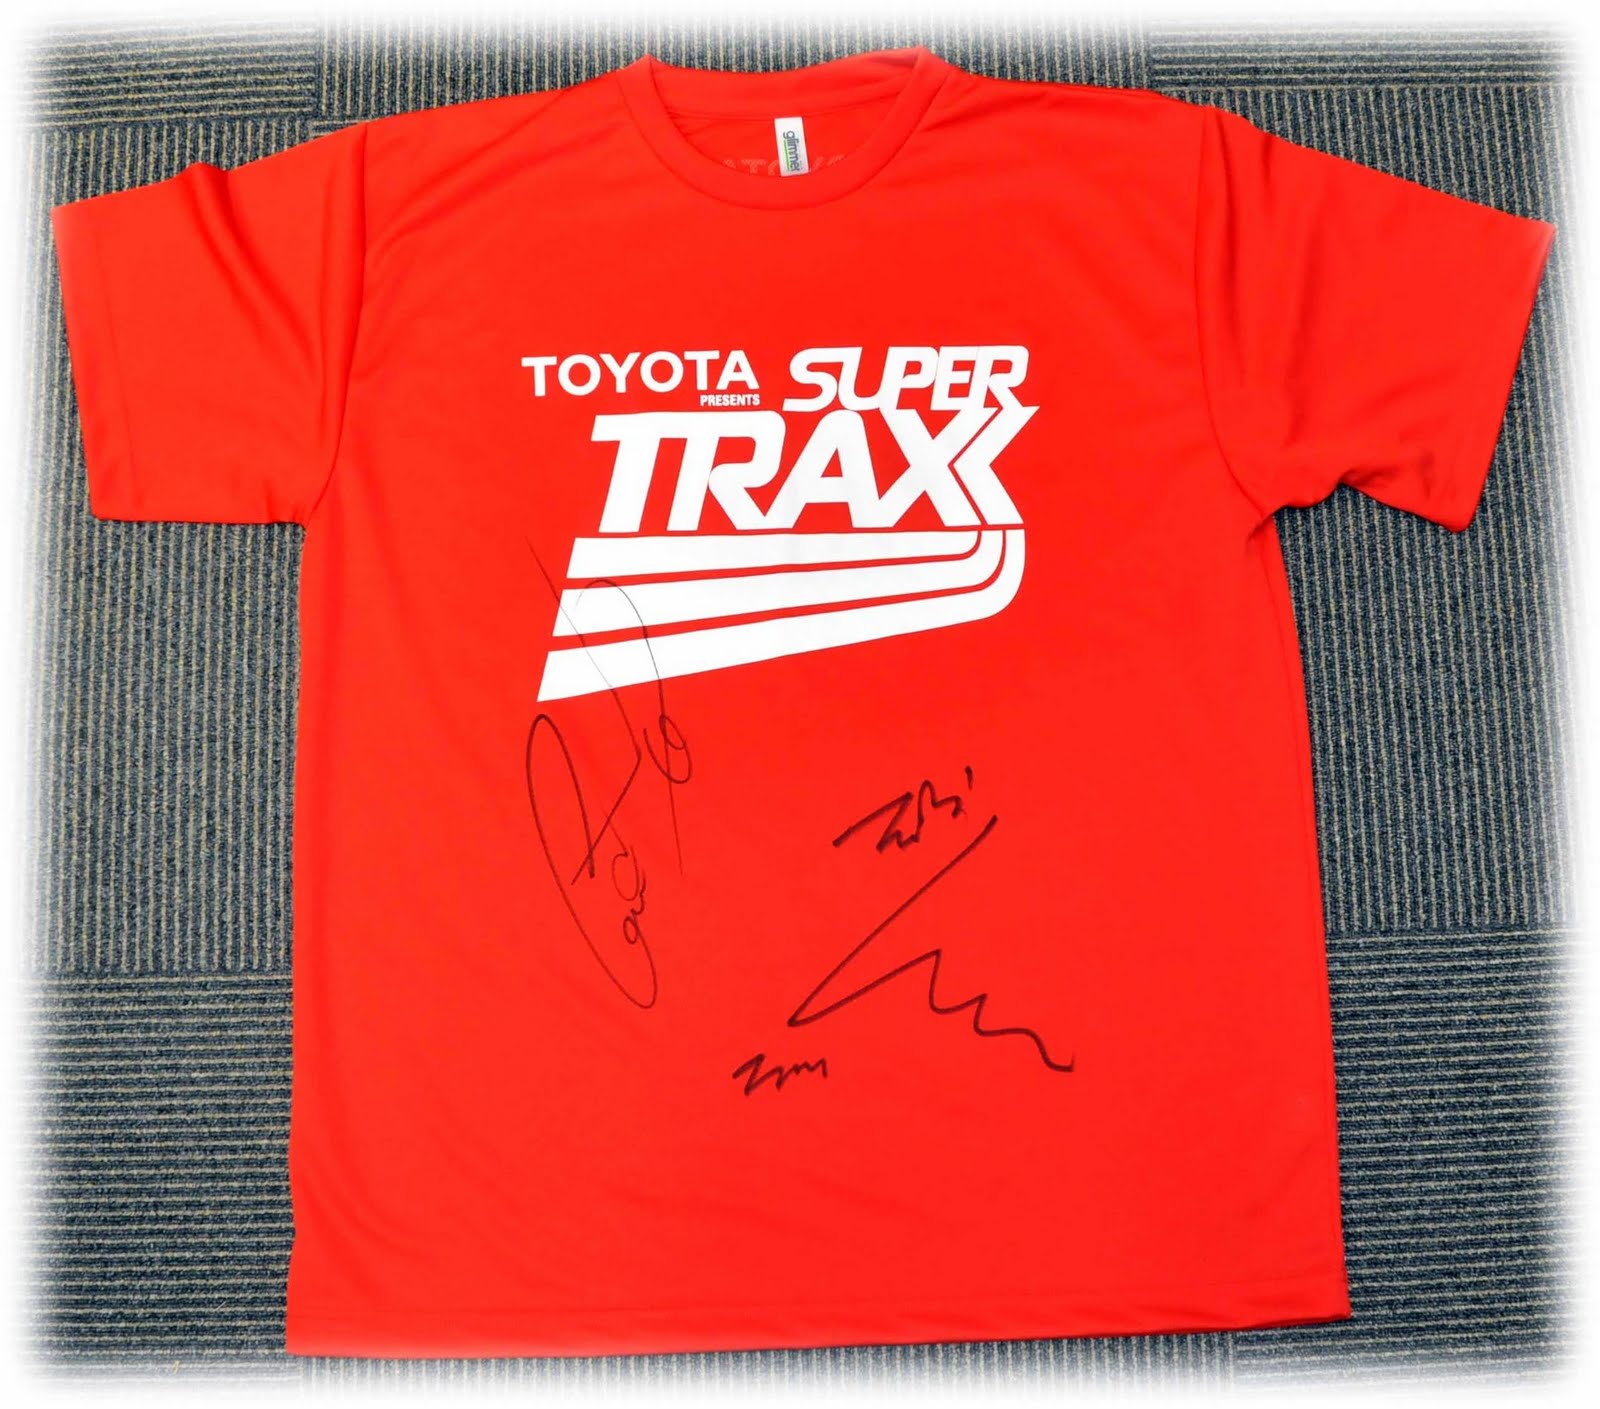 [Pics] GD&TOP y Taeyang Items autografiados para el SuperTraxx Signed+gdtop+shirt+for+supertraxx